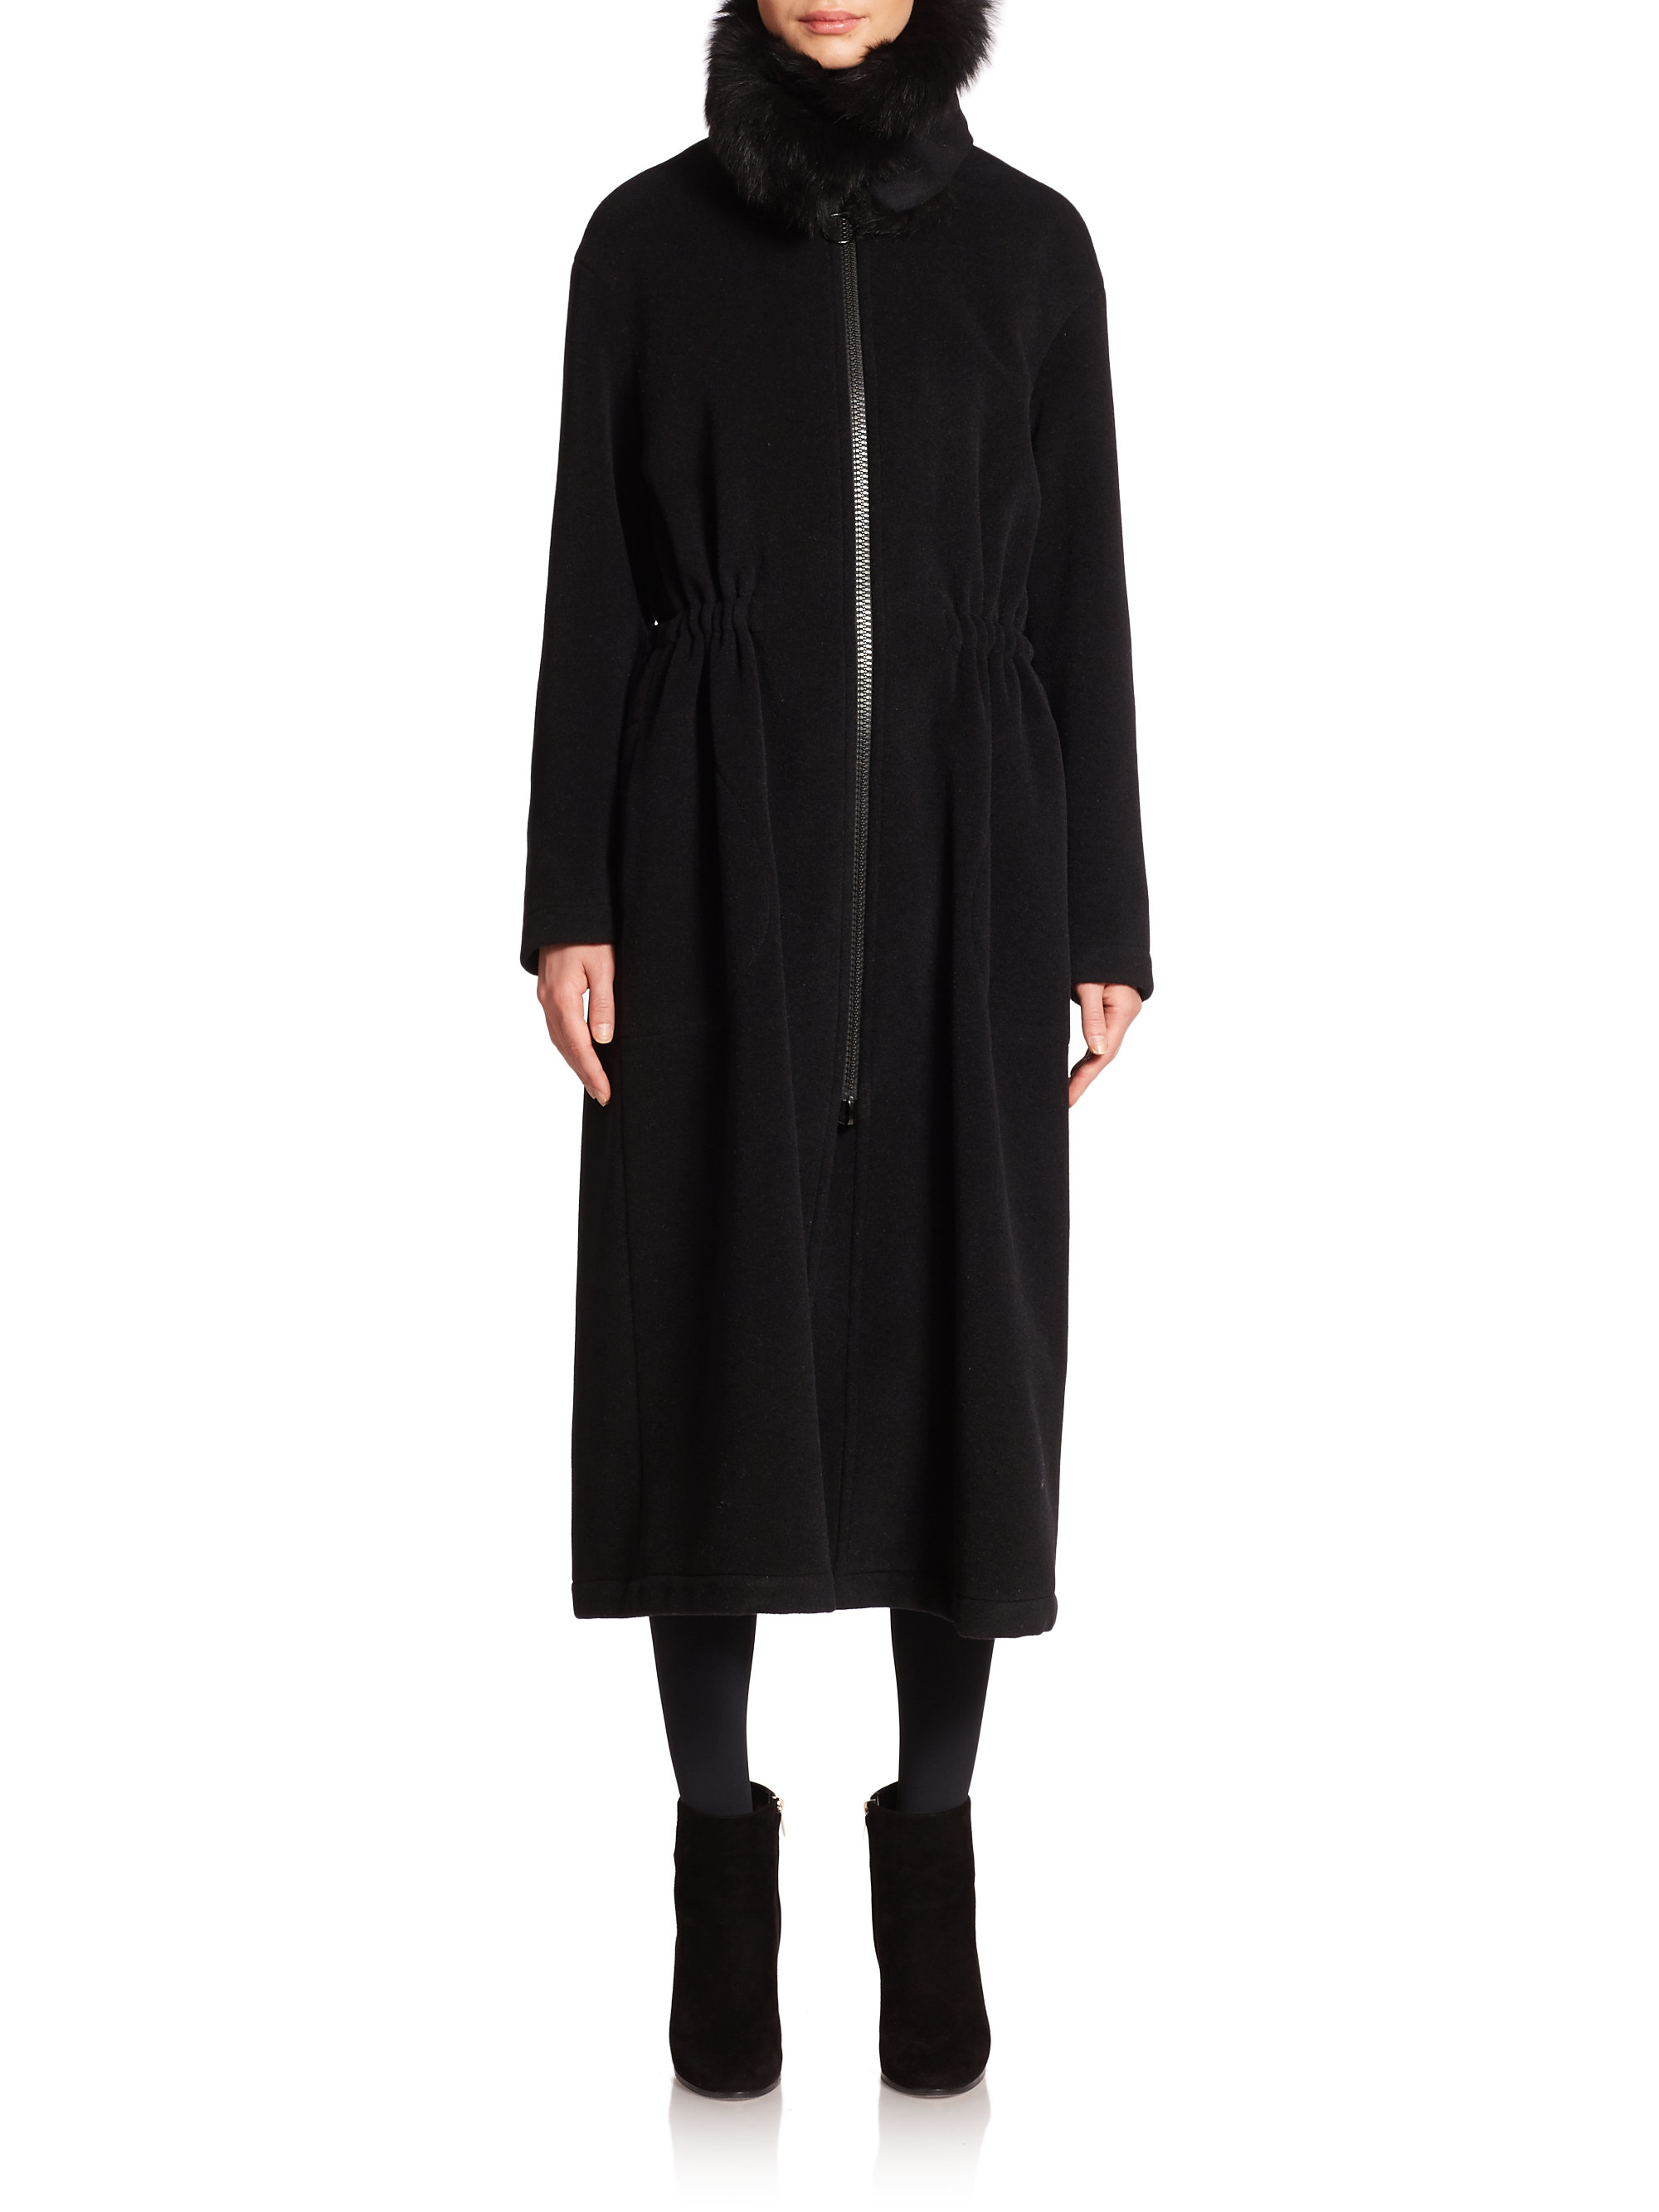 Lyst - Akris Punto Wool & Angora Fur-collar Coat in Black